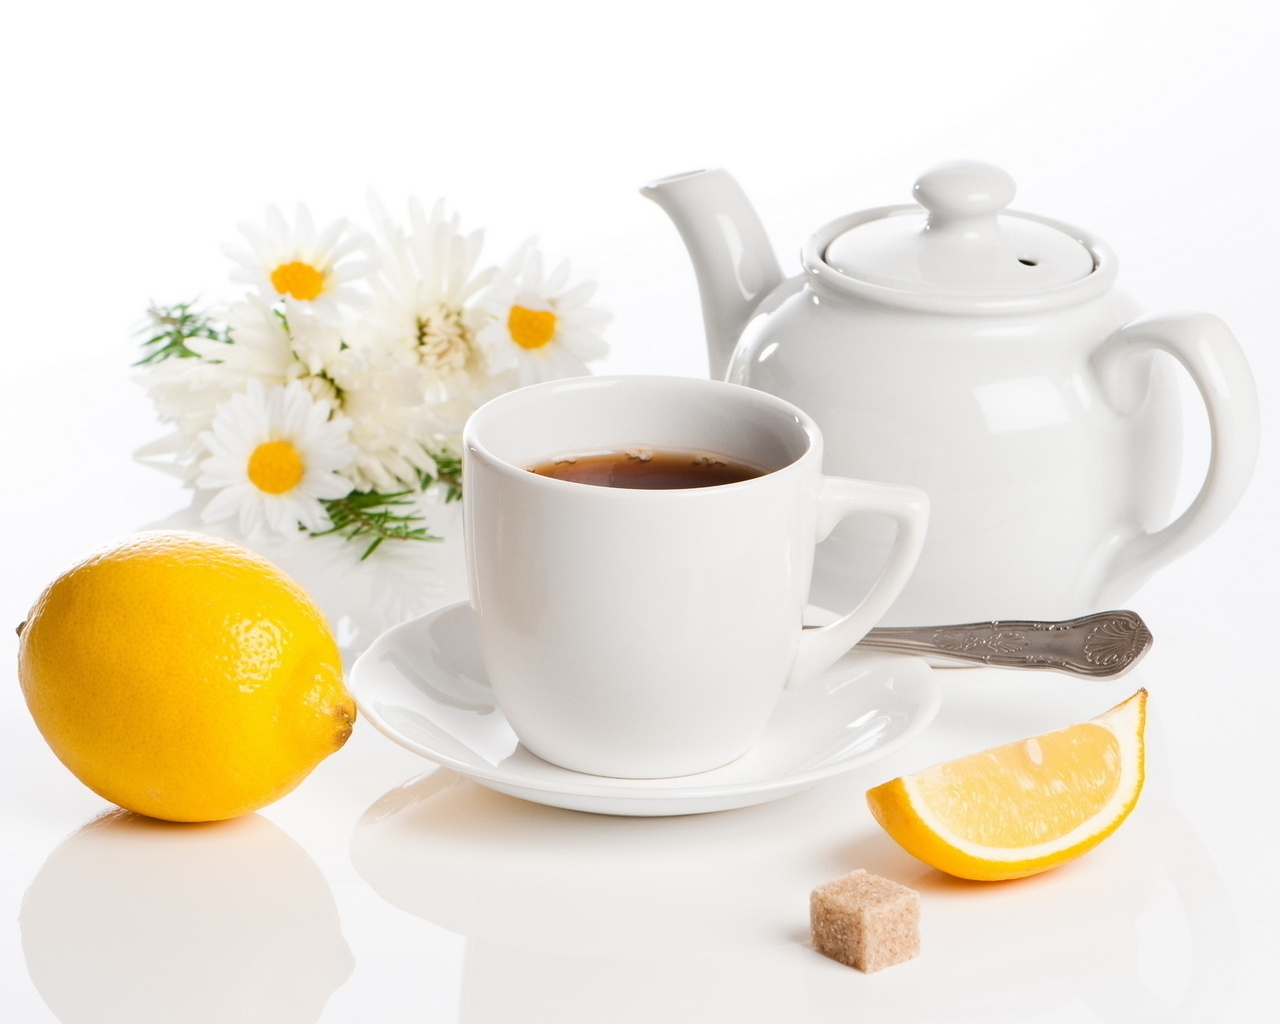 Lemon Tea for 1280 x 1024 resolution